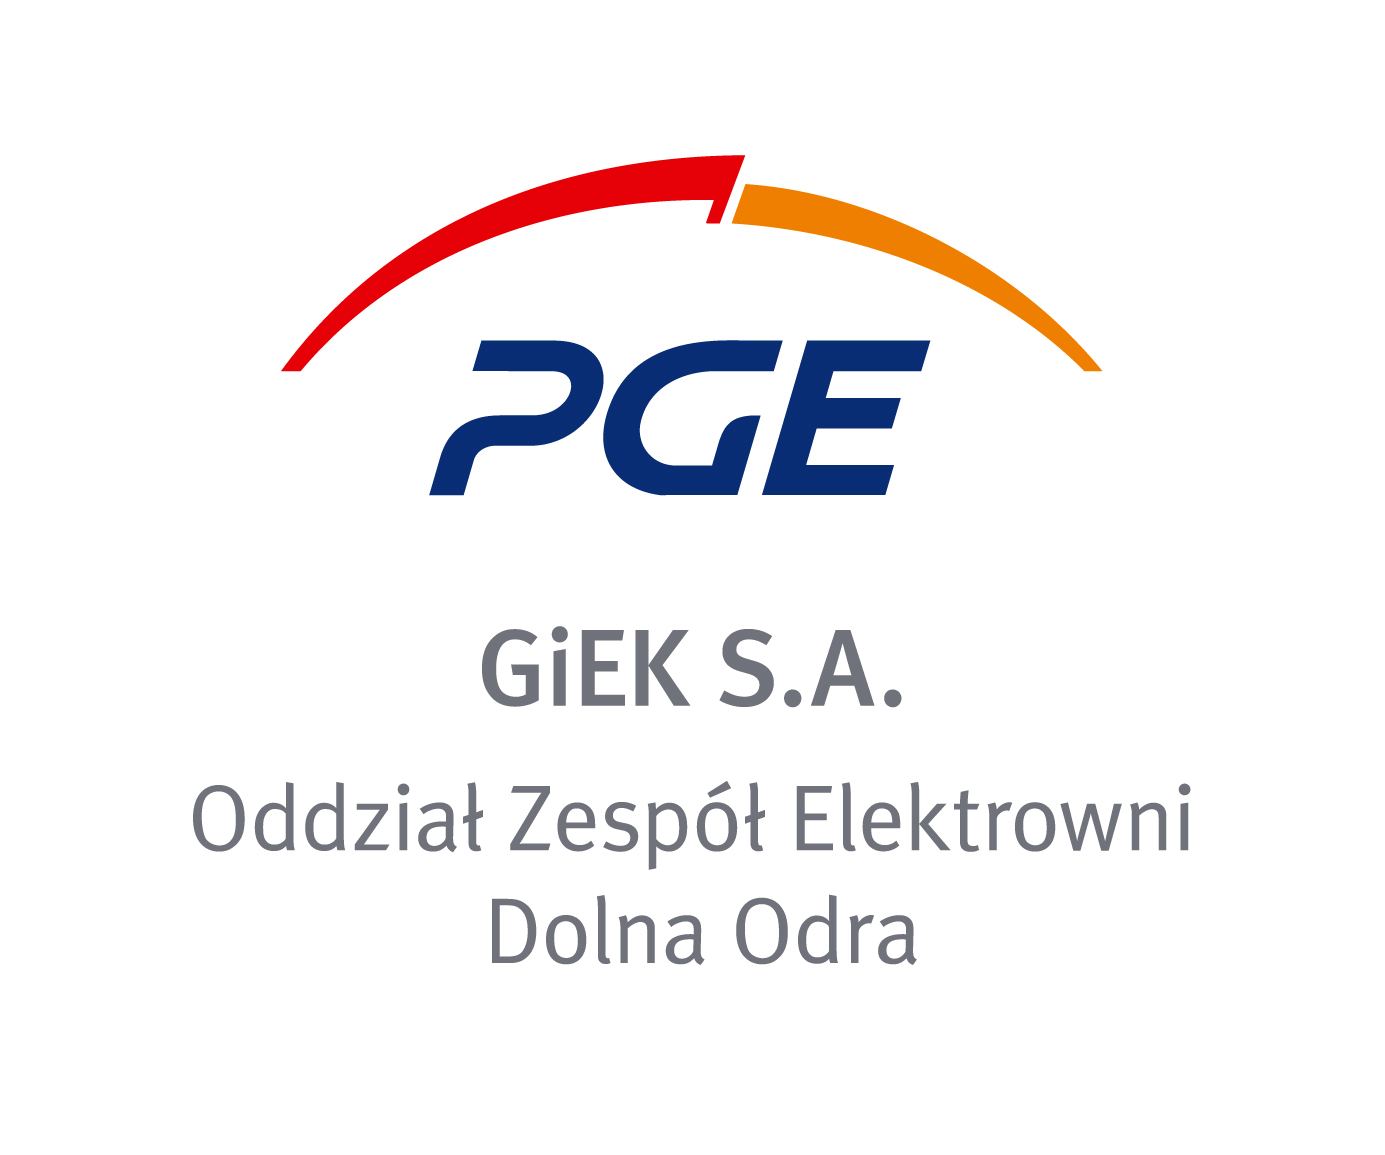 PGE GiEK SA Oddział Zespół Elektrowni Dolna Odra